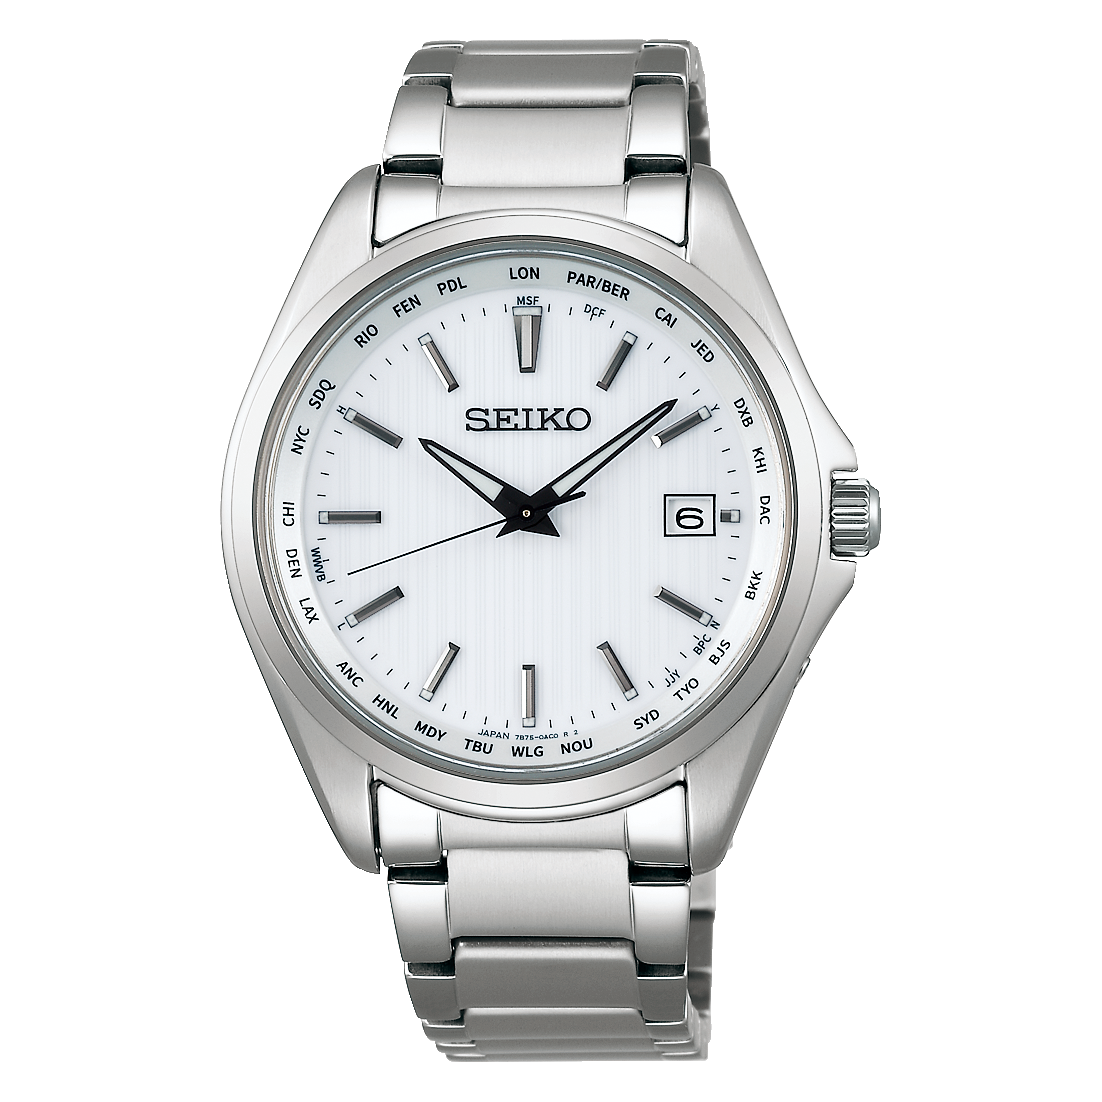 特徴風防防水SEIKO SBTM235 型番訂正しました。 - 腕時計(アナログ)